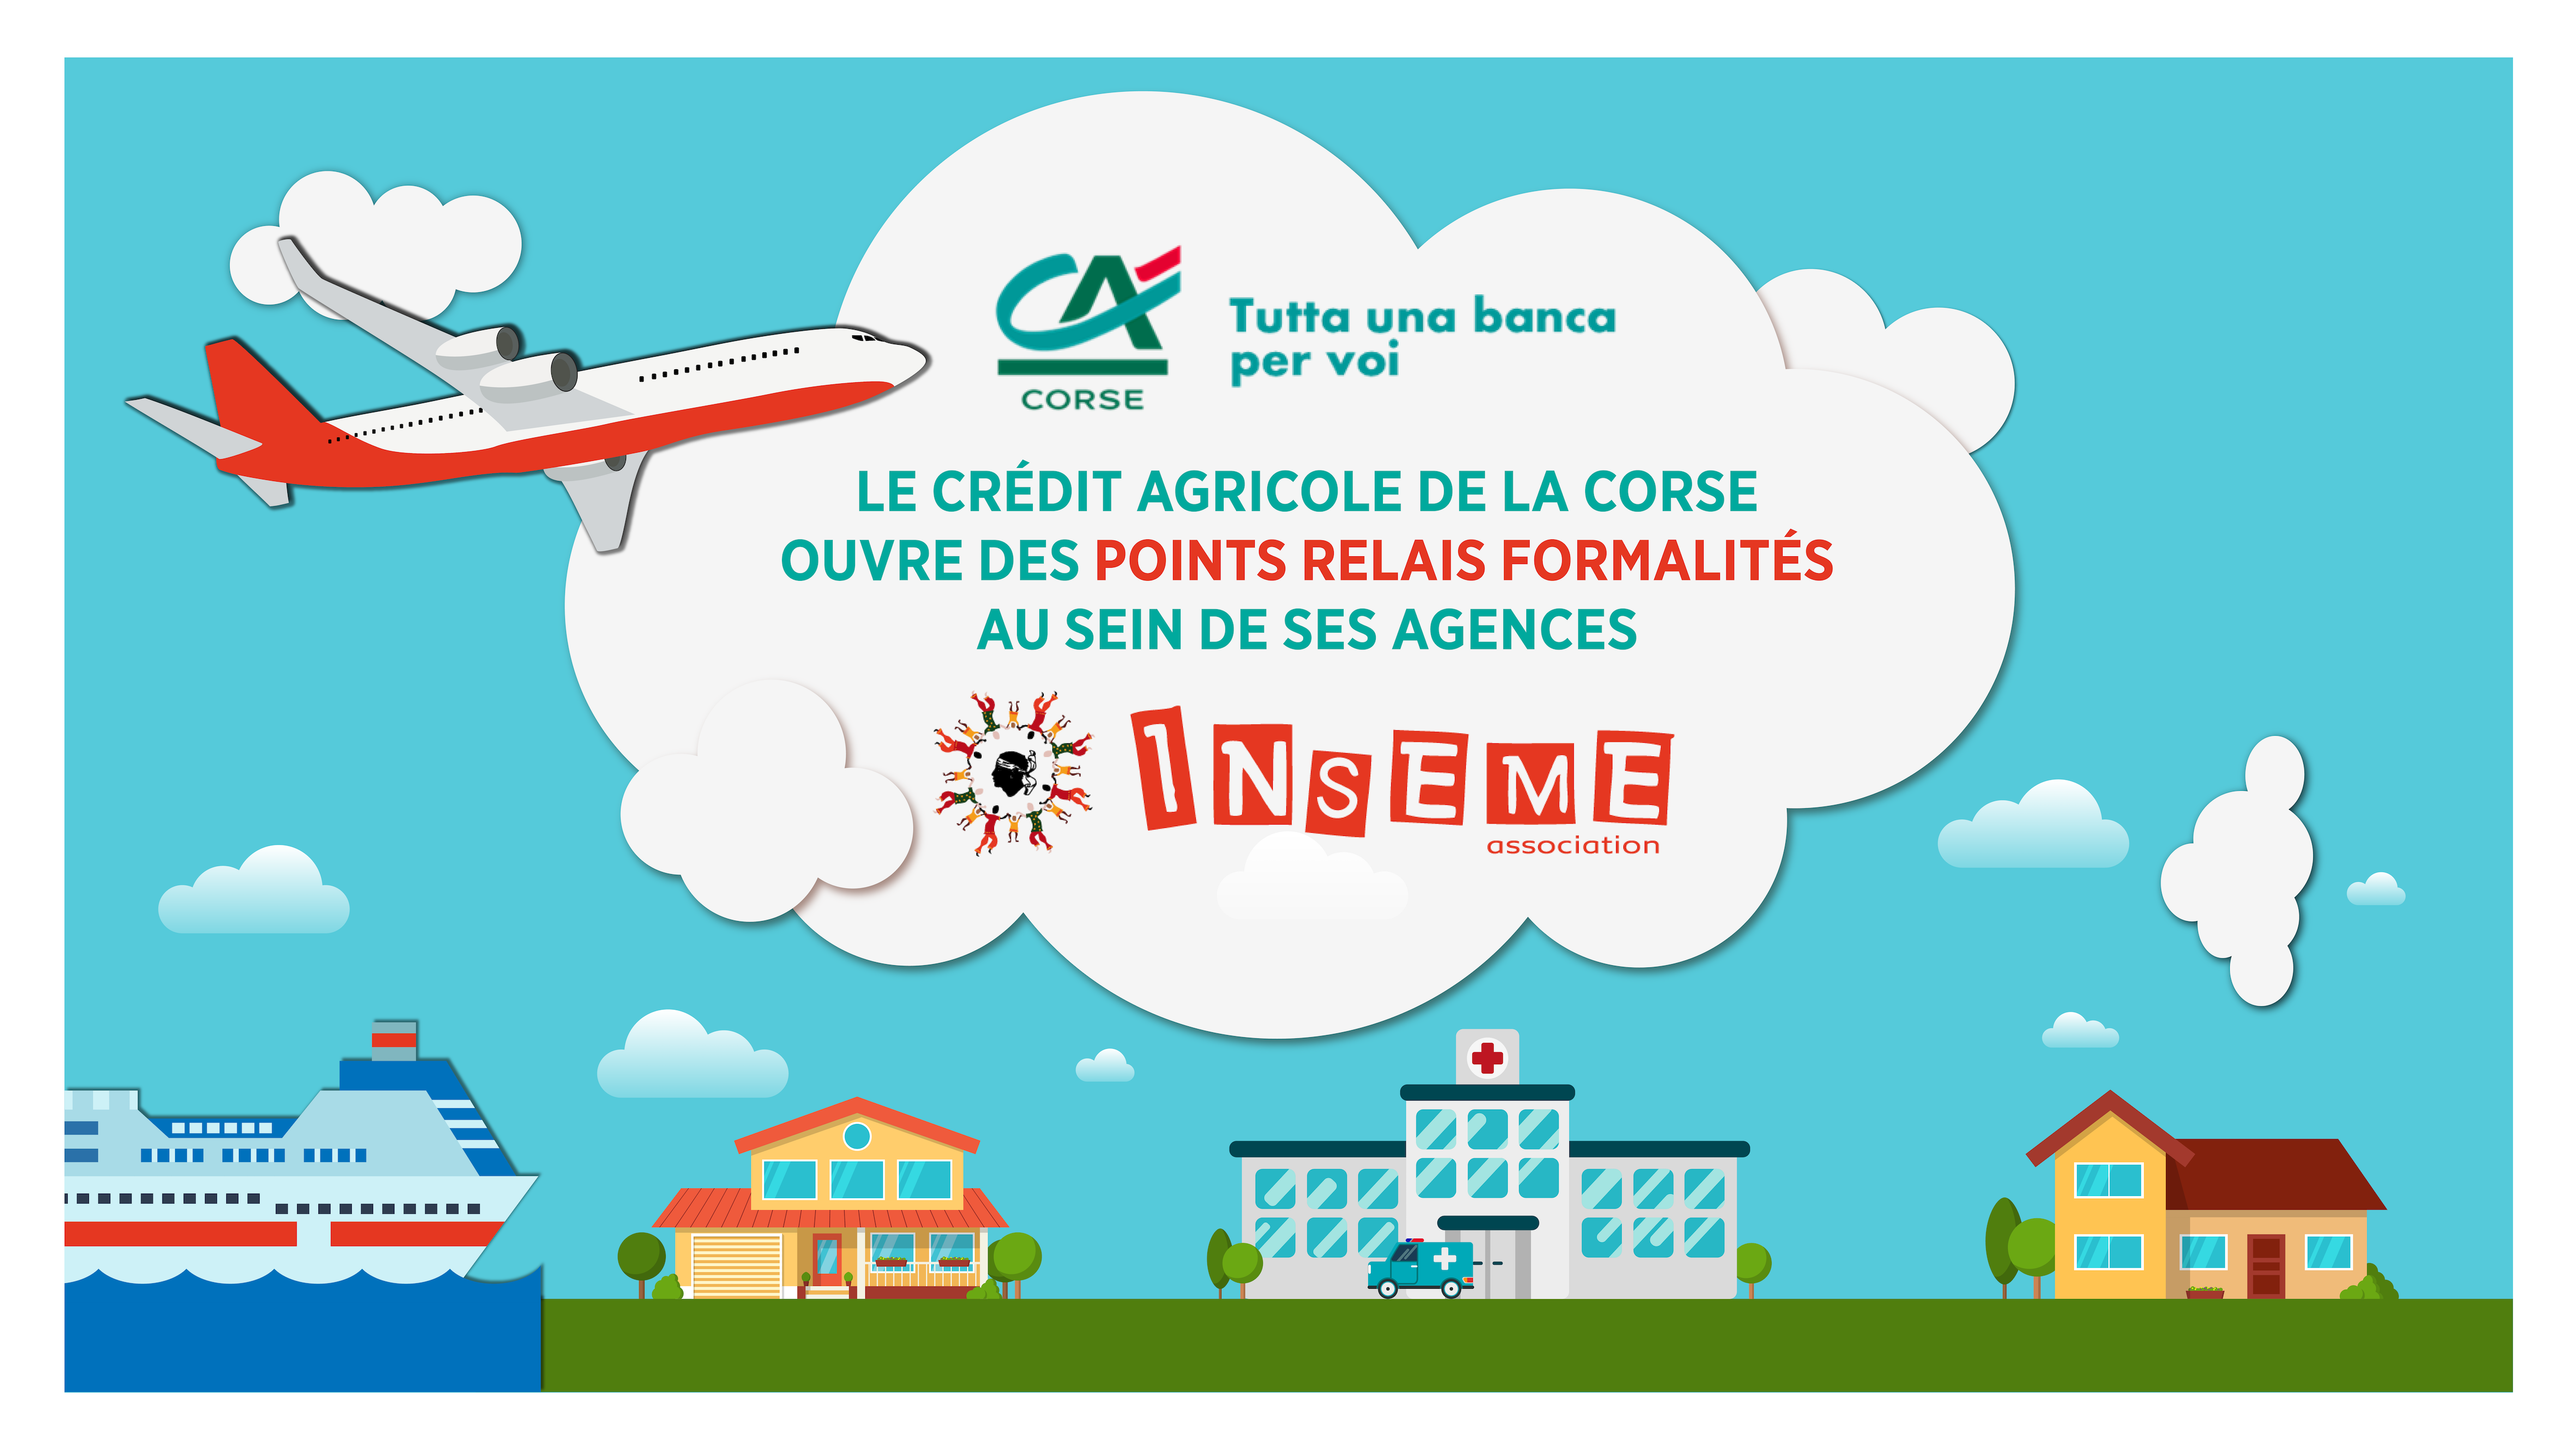 L'association Inseme ouvre des points relais formalités dans les agences Crédit Agricole de la Corse